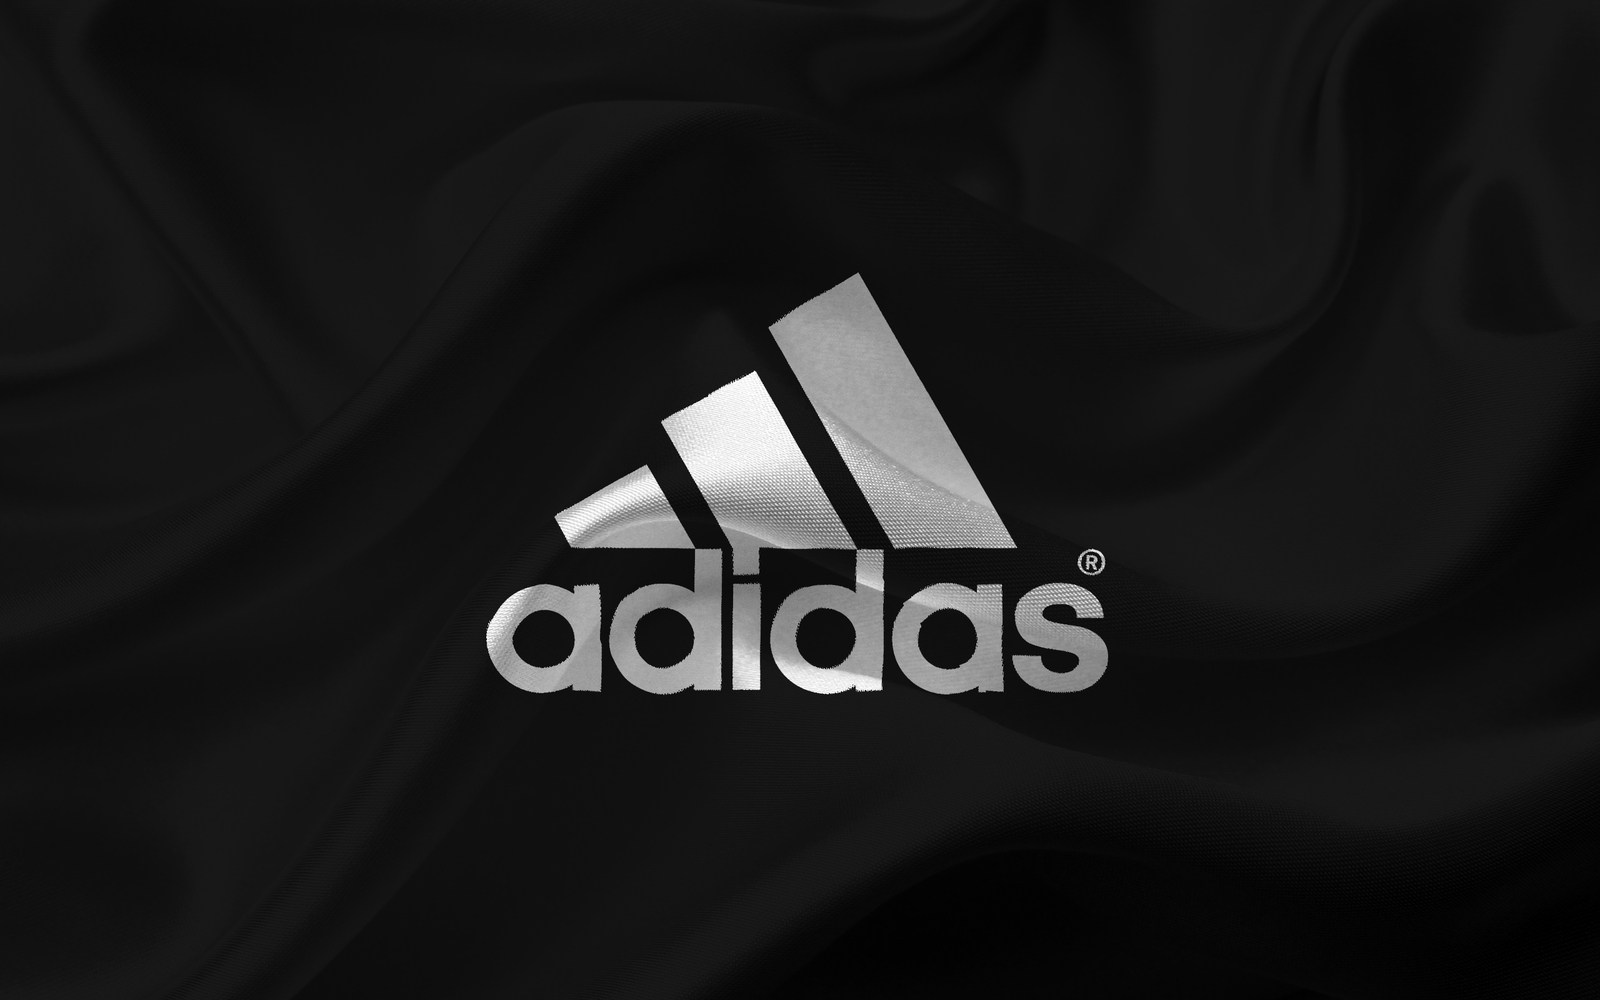 adidas-emblem-adidas-logo-black-silk.jpg